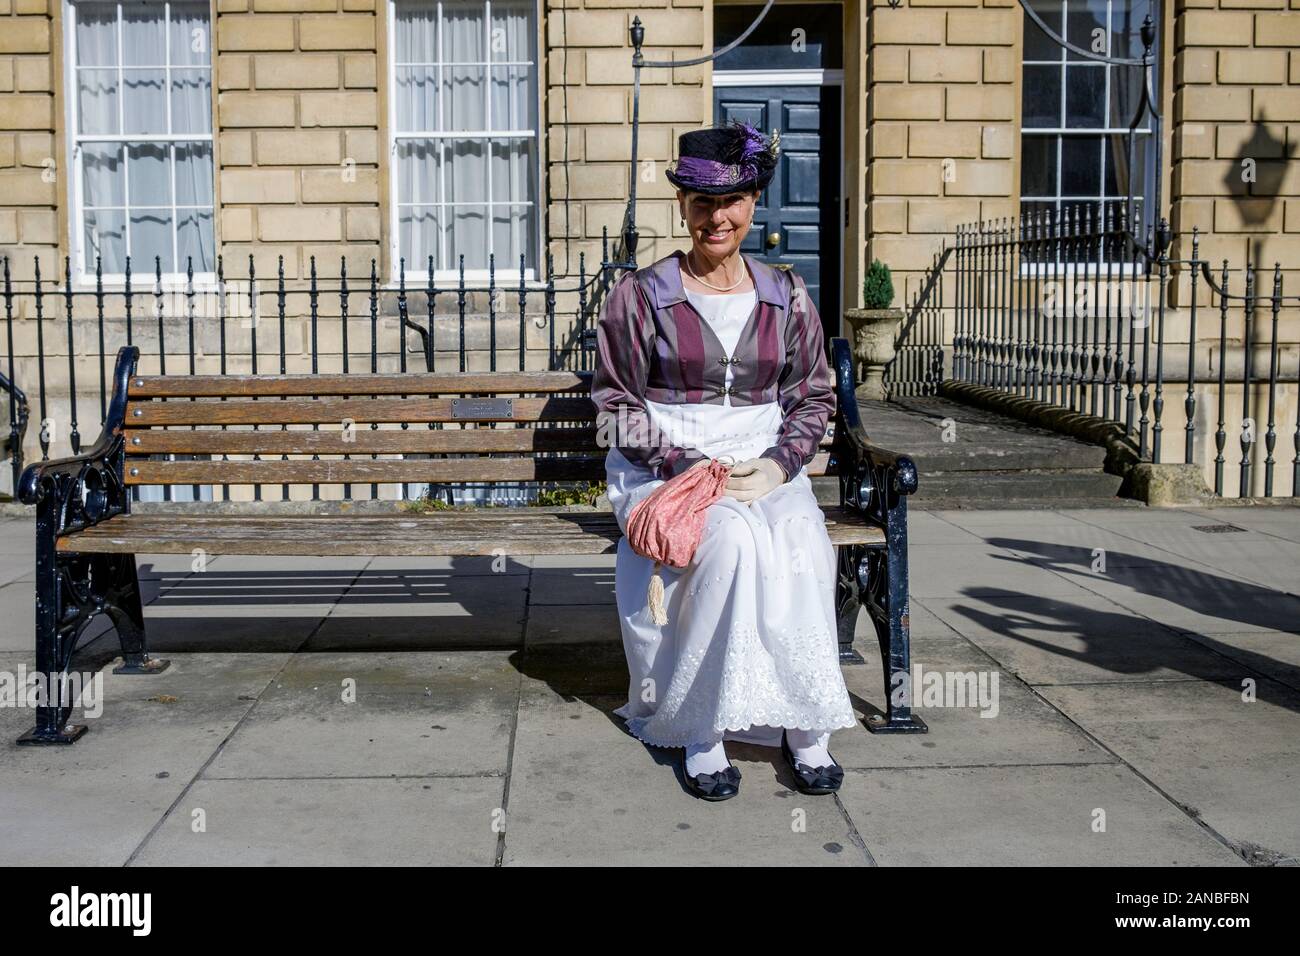 A Jane Austen fan dressed in regency costumes is pictured taking part in the Jane Austen Festival  Regency Costumed Promenade.Bath,England,UK 14-09-19 Stock Photo